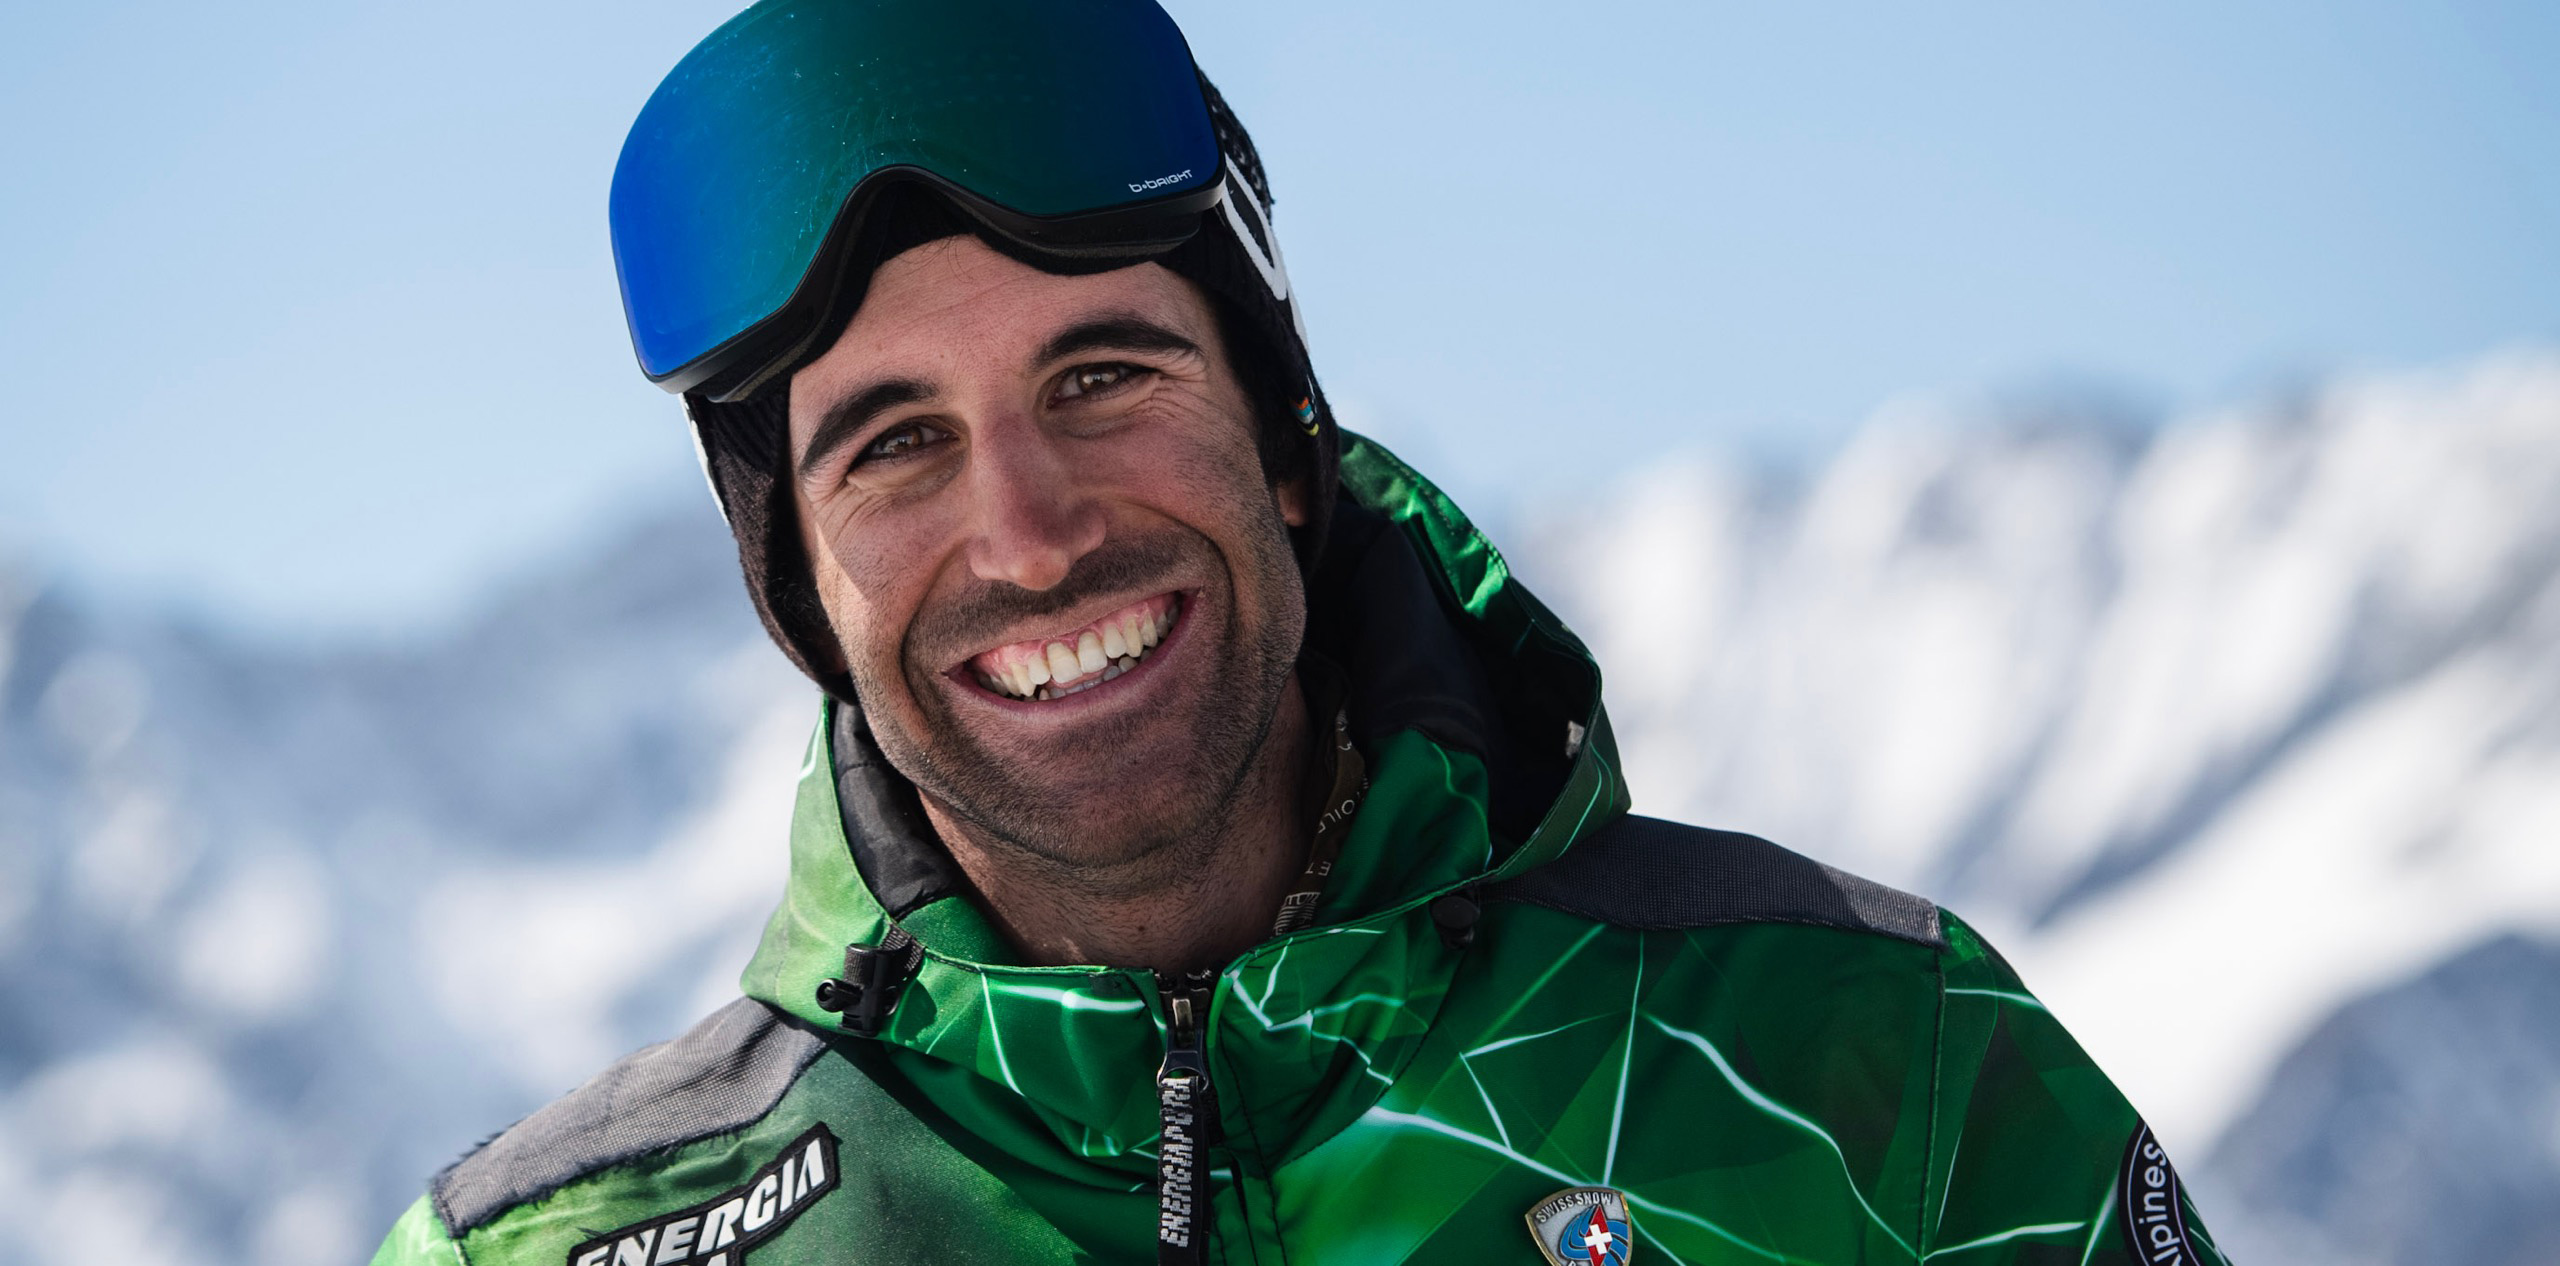 Skilehrer in Uniform, lächelnd, Hände in die Hüften gestemmt, im Hintergrund die Zermatter Berge